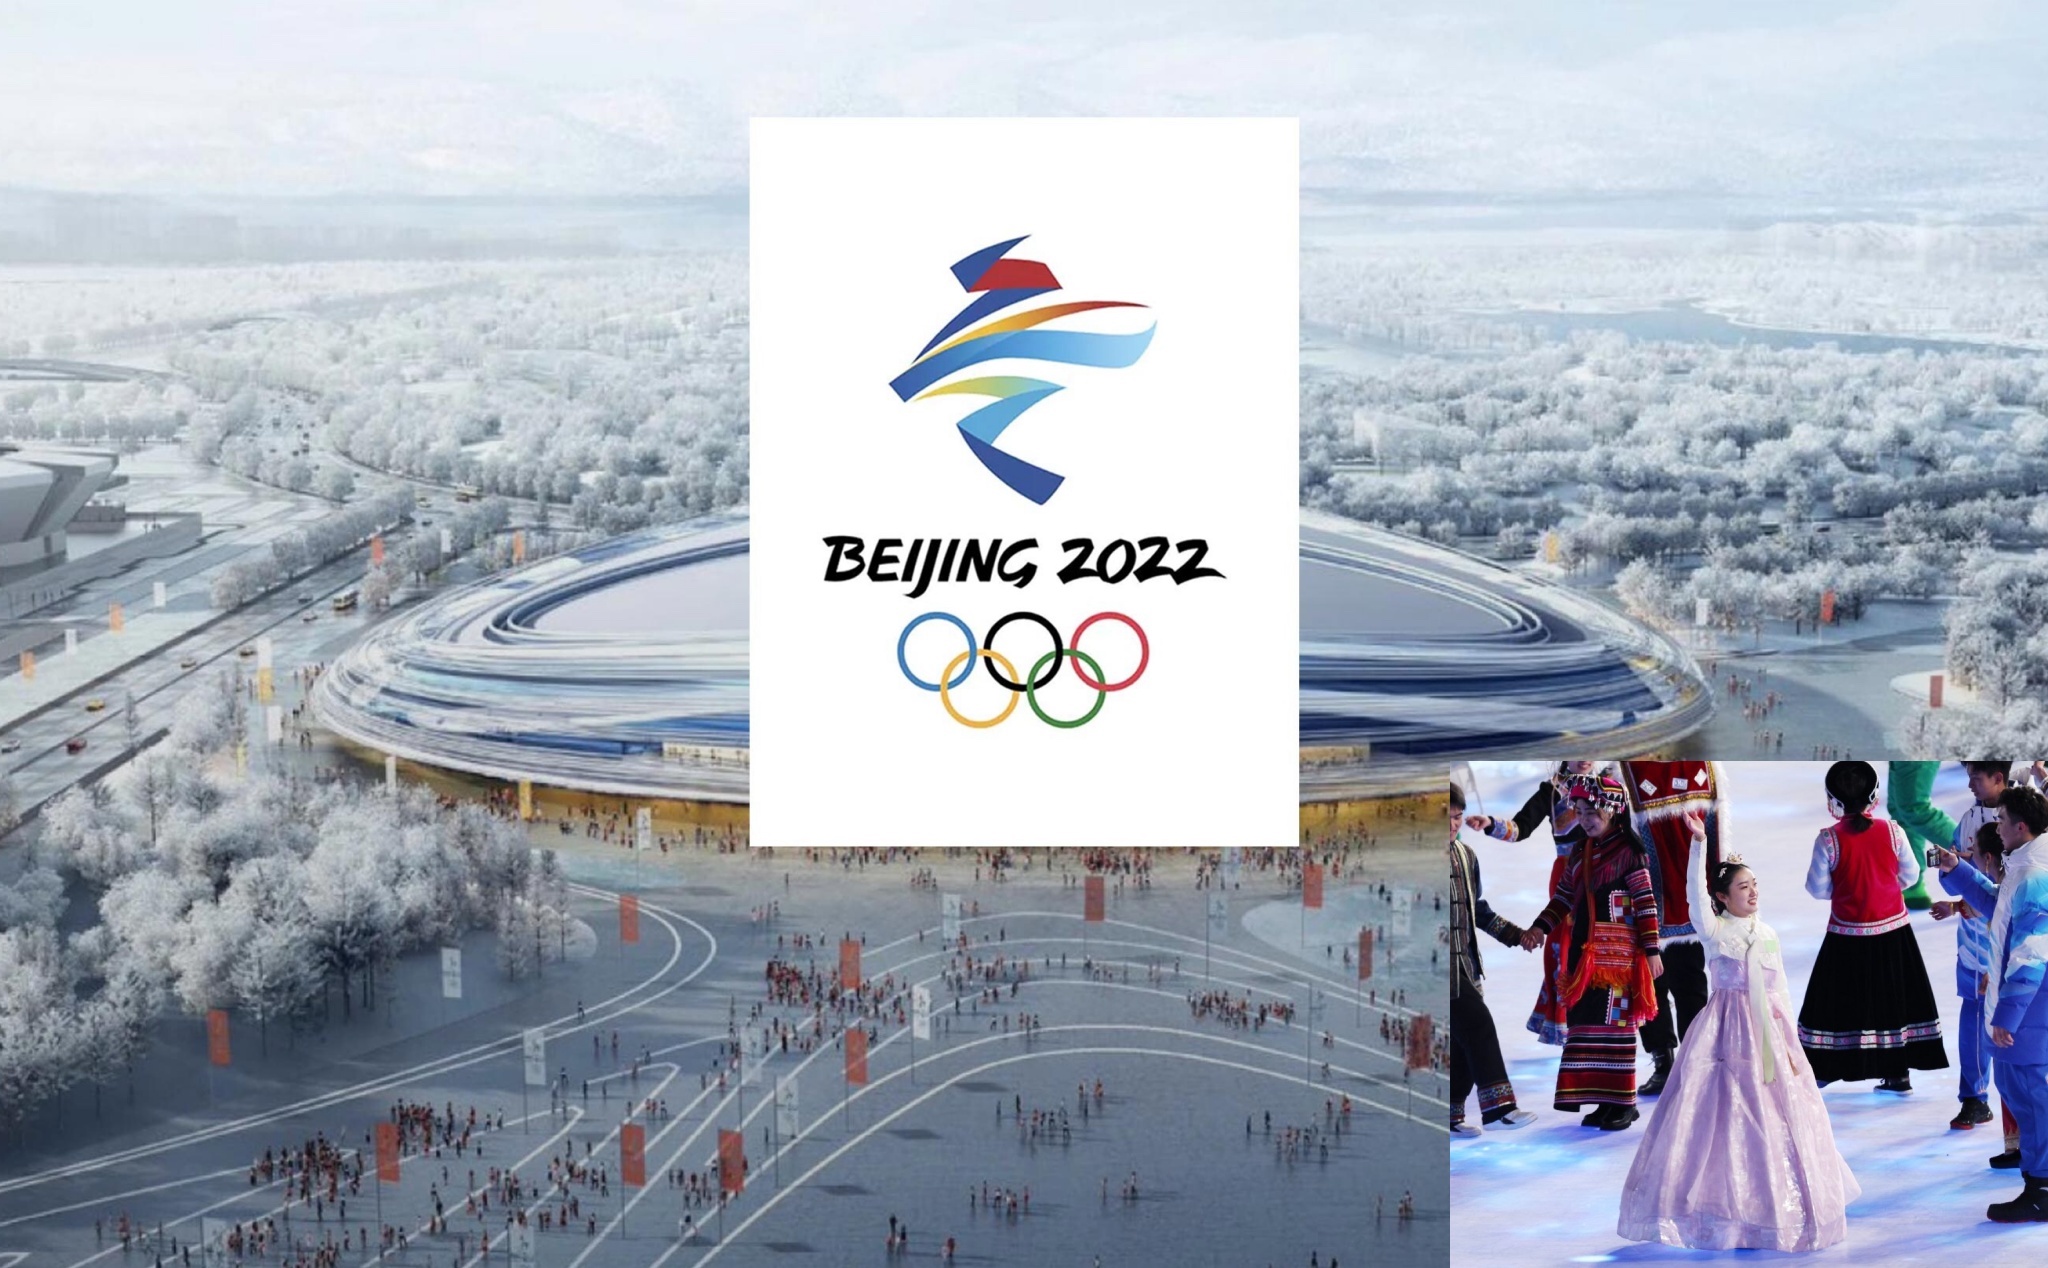 Hàn Quốc và Trung Quốc tranh cãi về trang phục truyền thống trong lễ khai mạc Olympic 2022